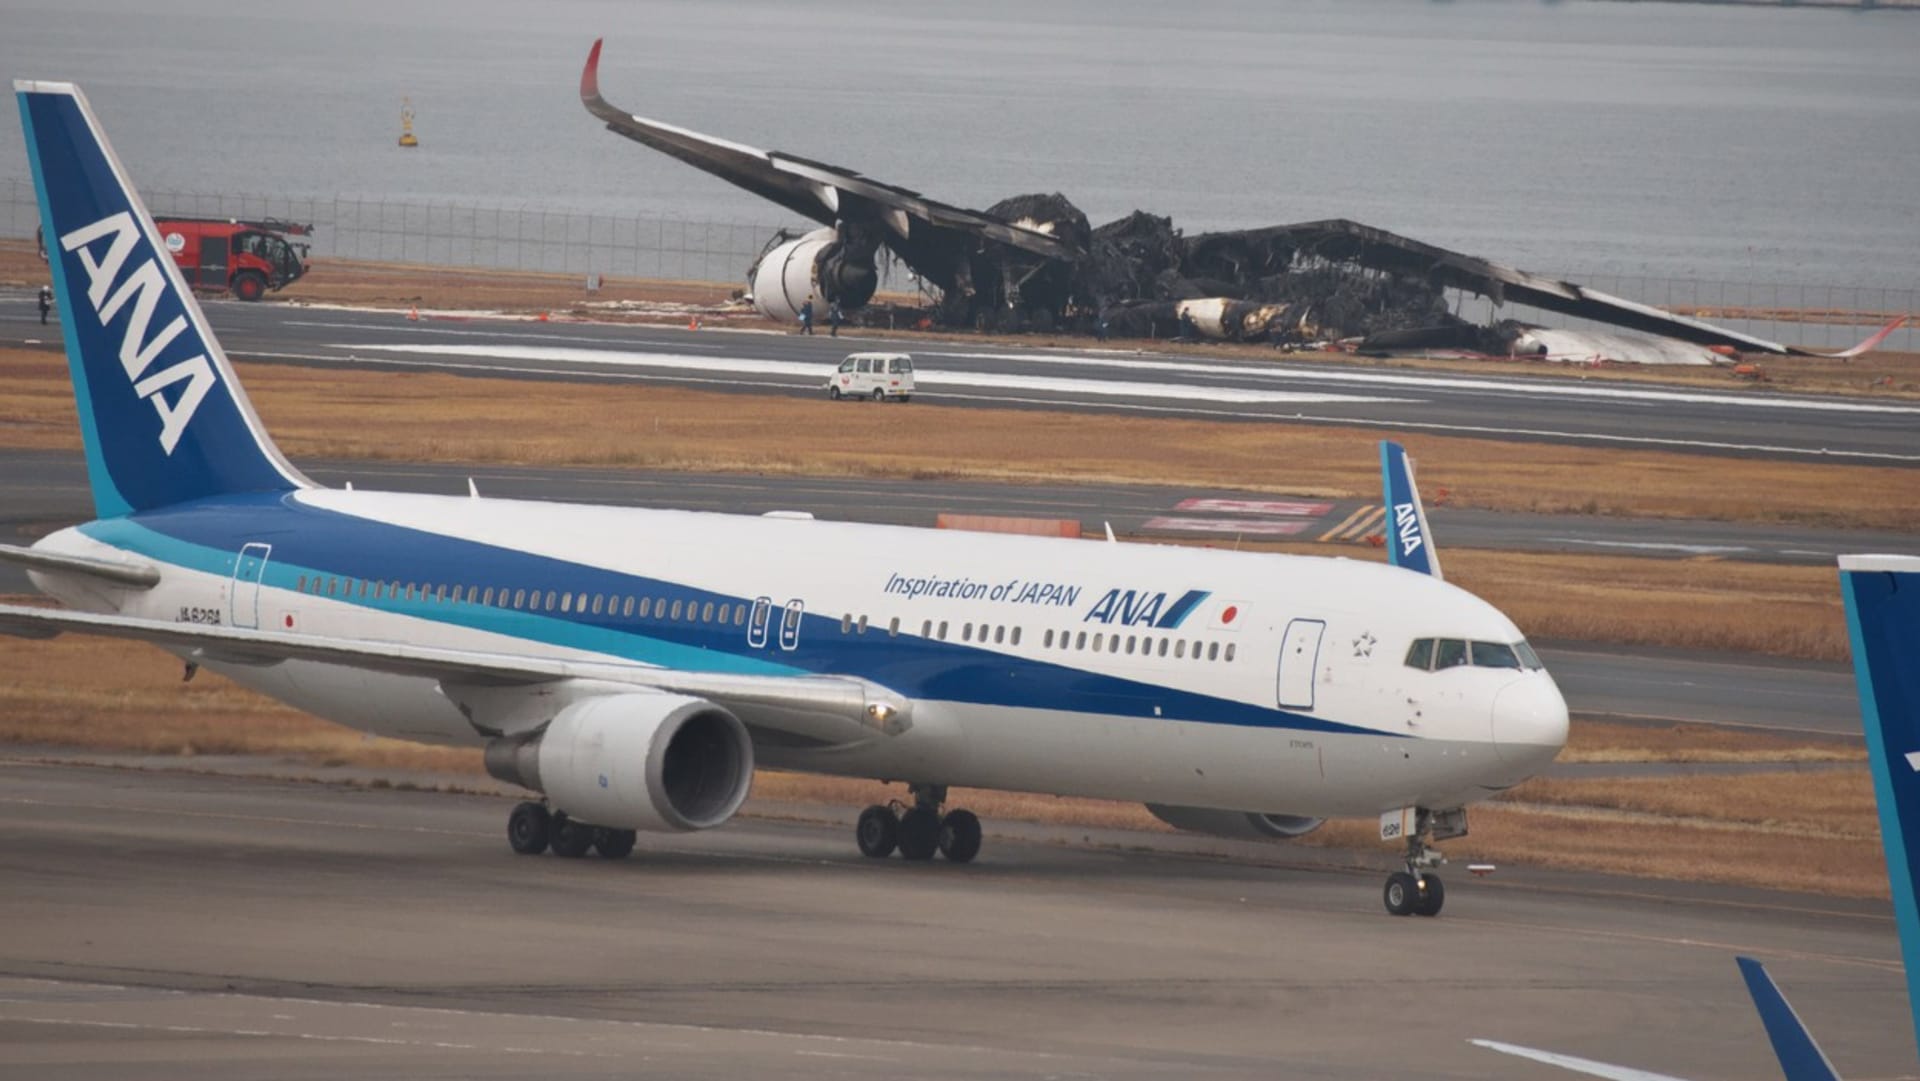 Zbytky ohořelého letounu na tokijském letišti Haneda a před ním funkční stroj.